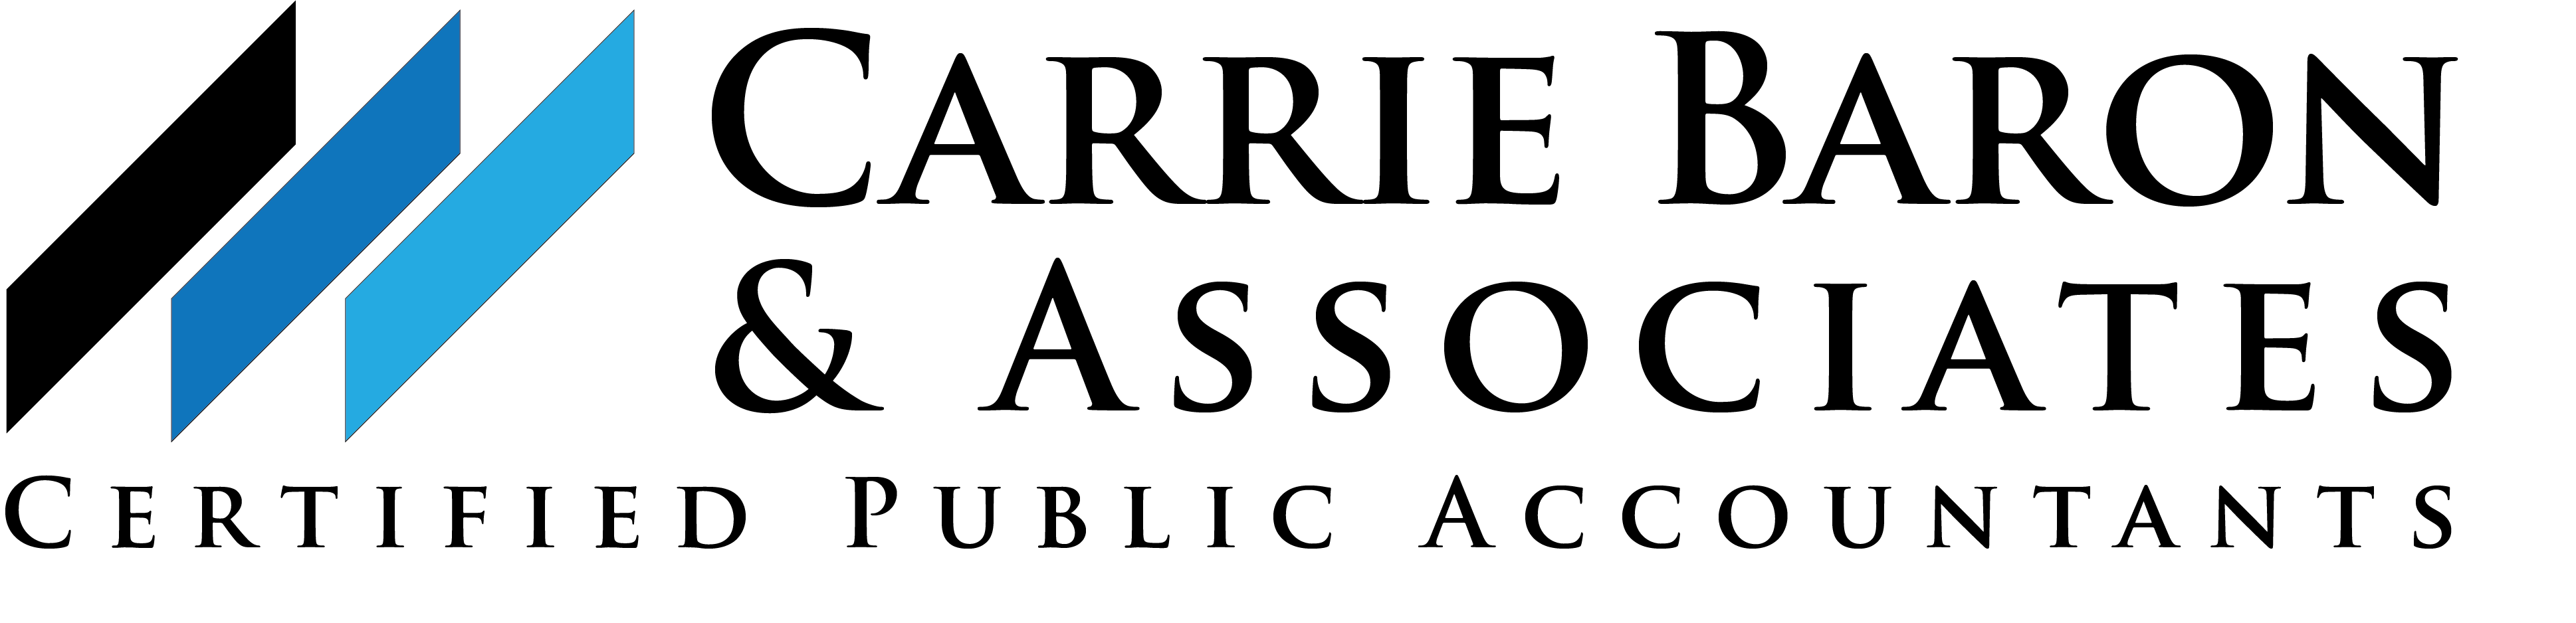 Carrie Baron & Associates Logo